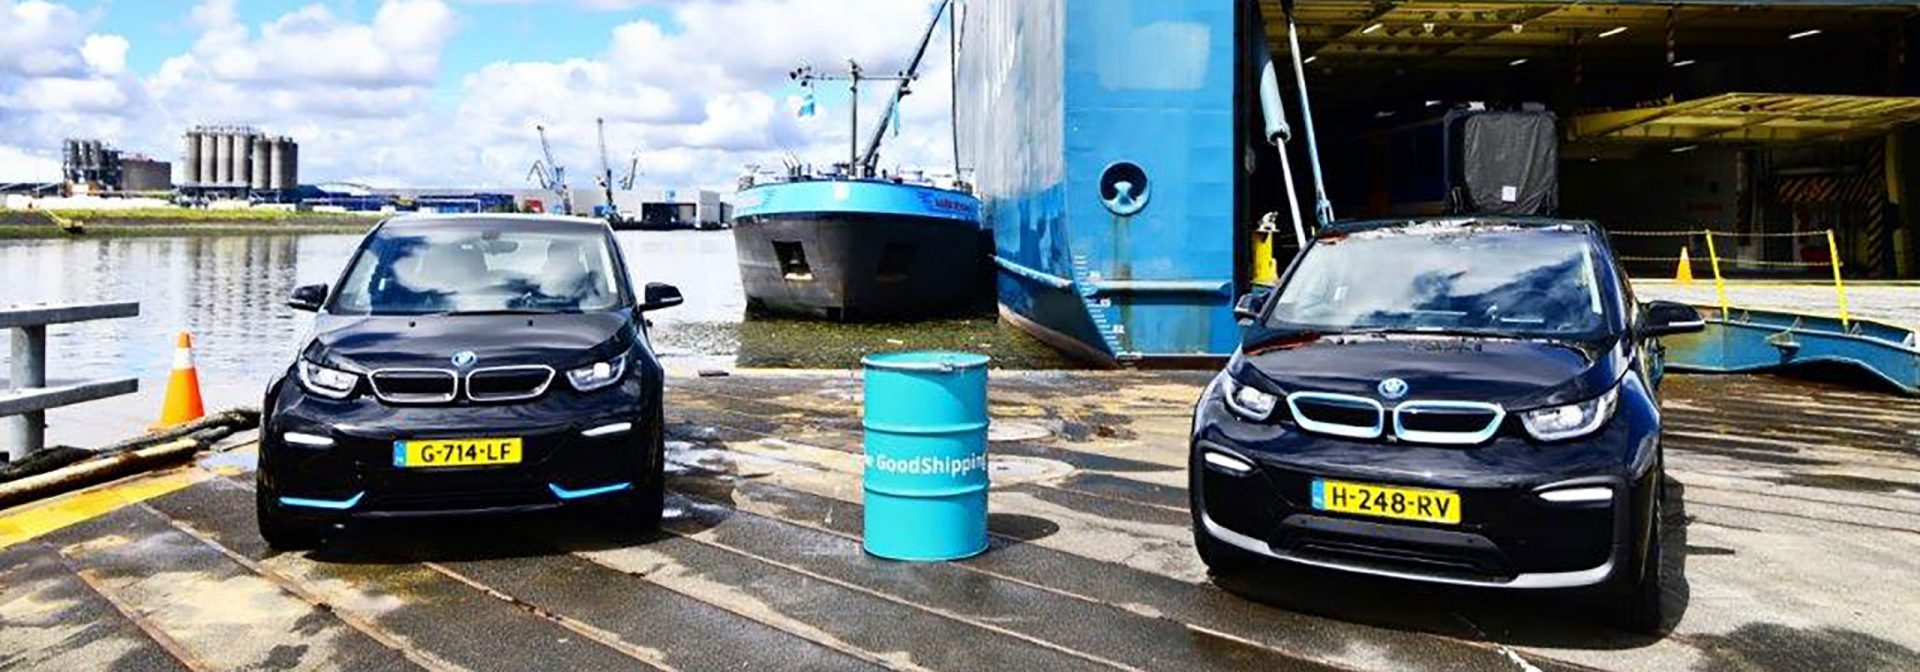 Zwei BMW i3 in einem Hafen vor einem Schiff